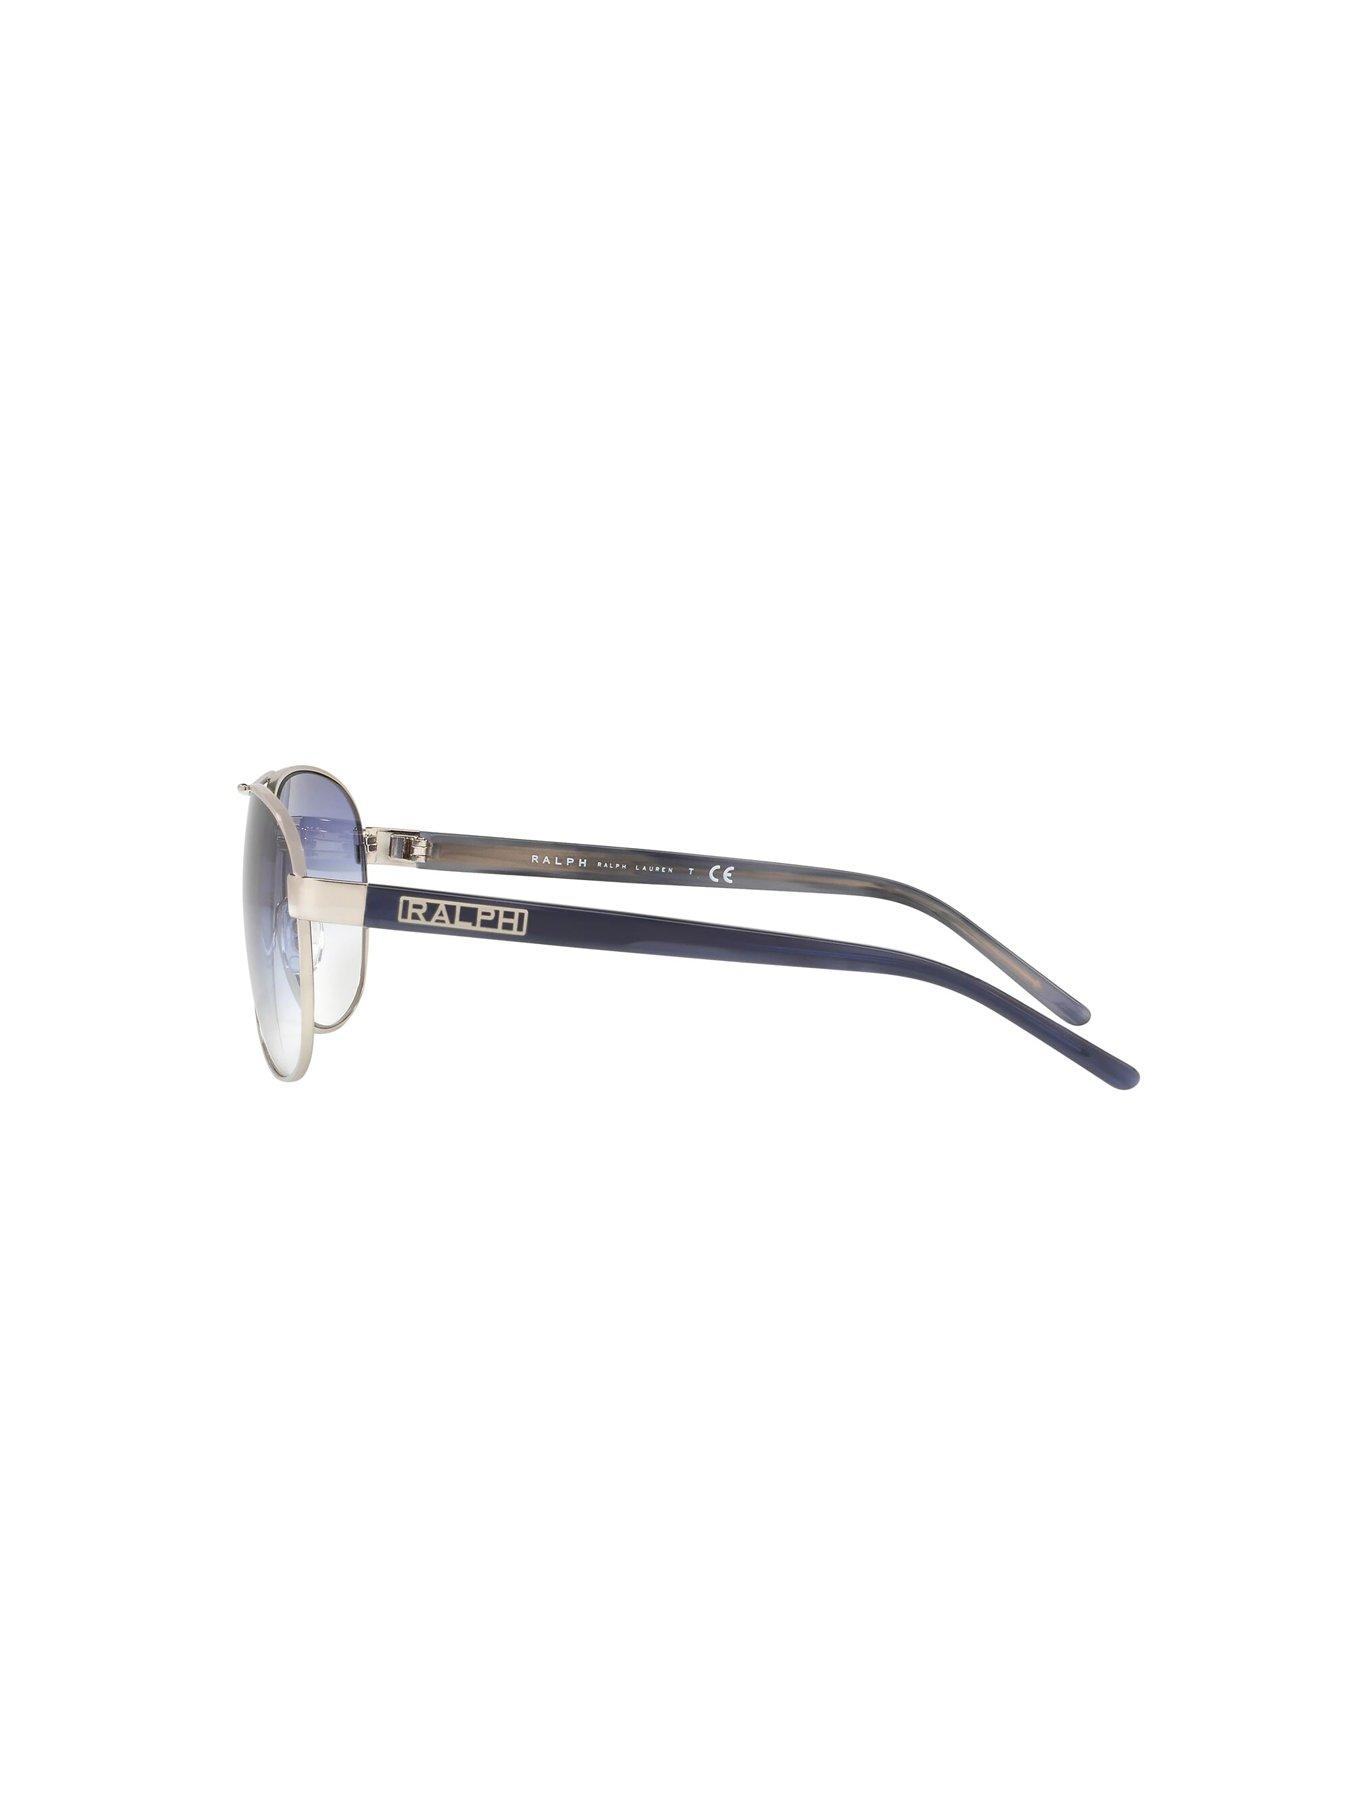 Ralph Lauren 4004 Pilot Sunglasses - Silver 